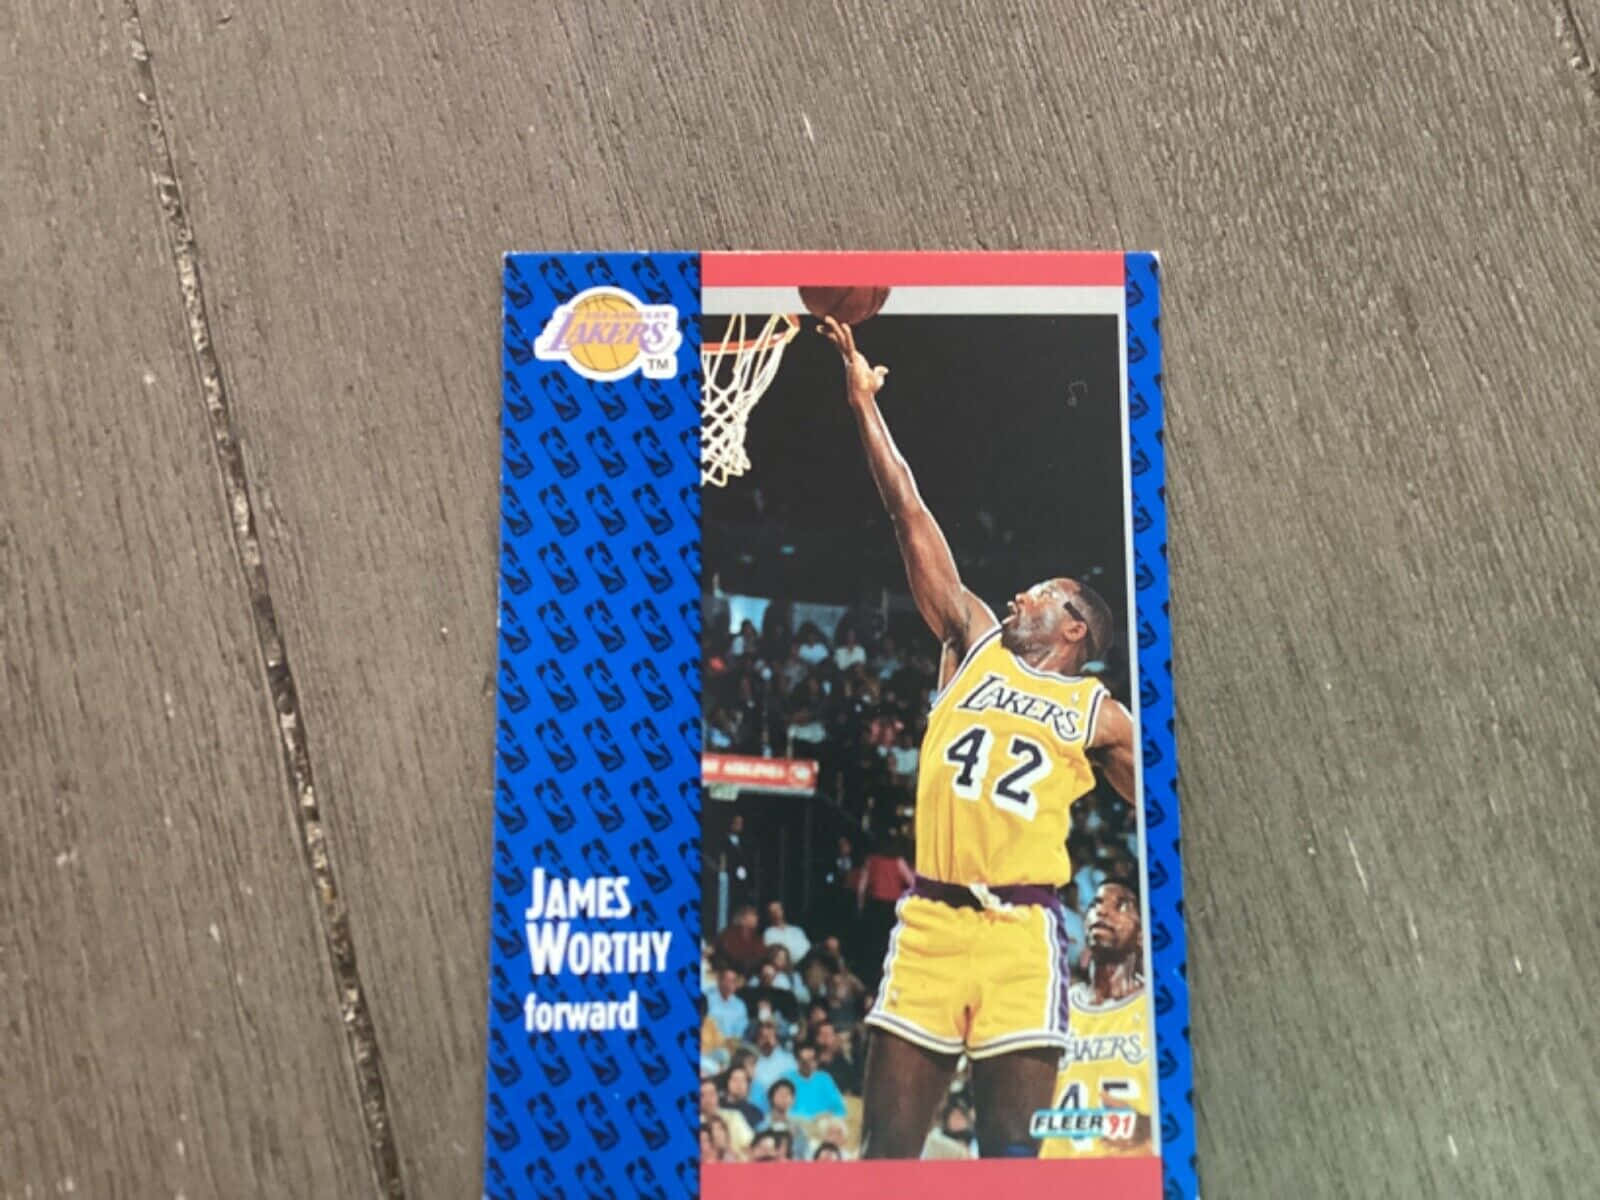 Fotode James Worthy Do Arremesso Lay Up Pelos Lakers Em Cartão De Imagem Para Fundo De Computador Ou Celular. Papel de Parede